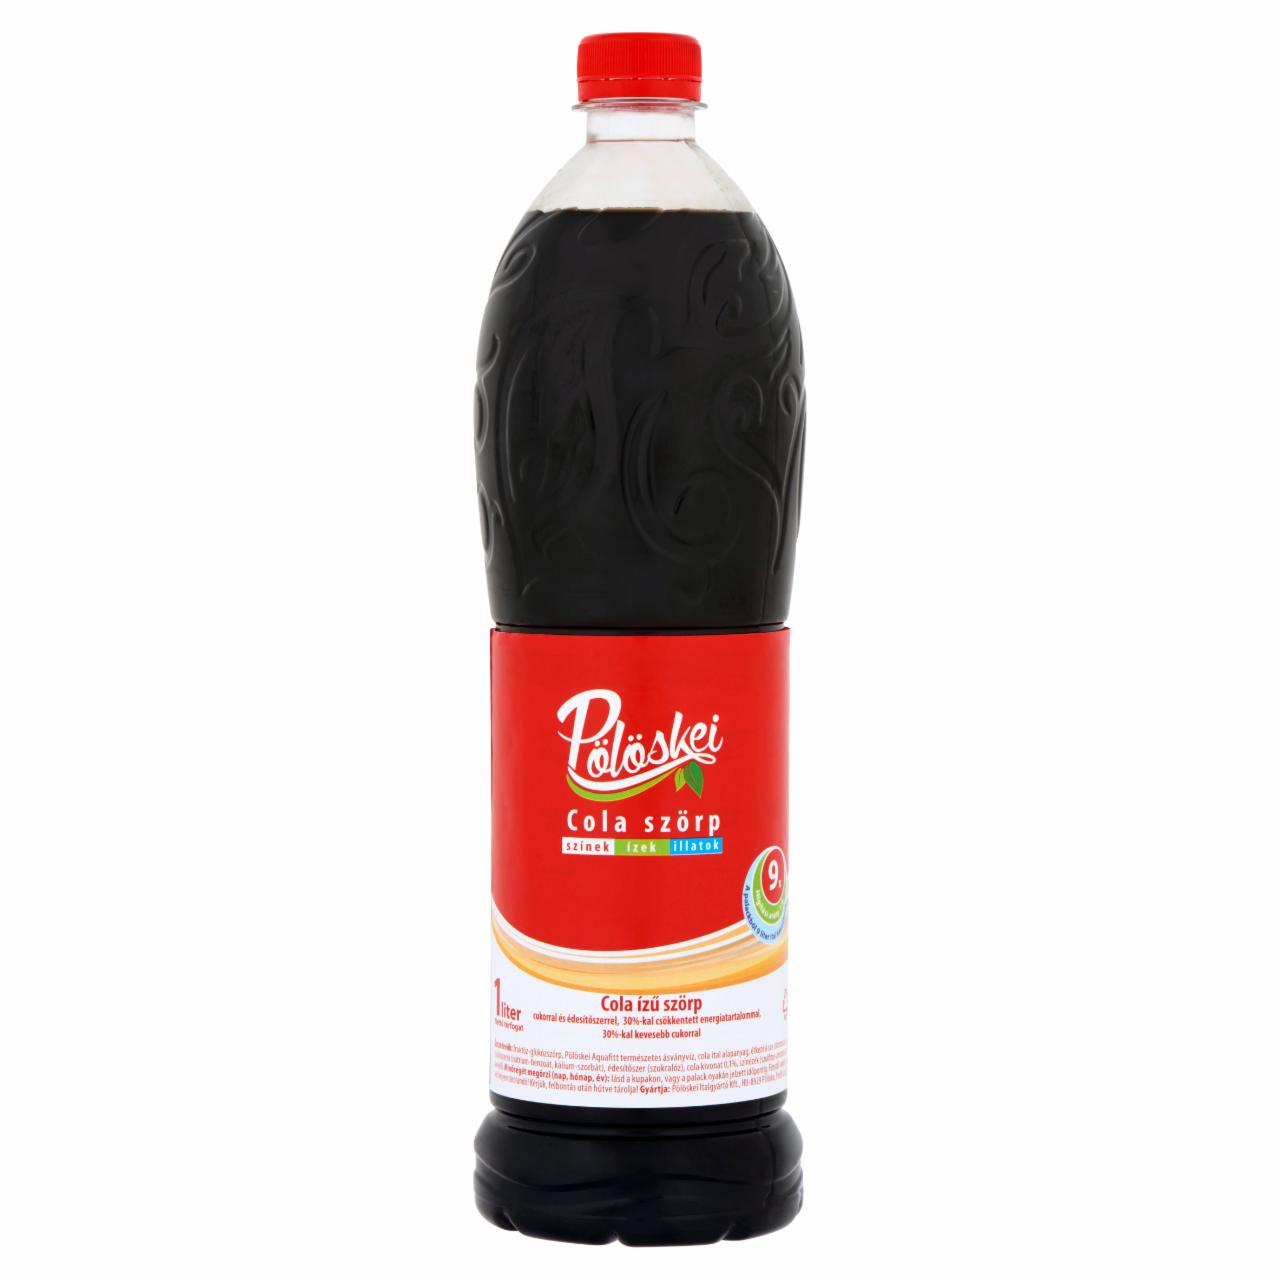 Képek - Pölöskei cola ízű szörp cukorral és édesítőszerrel 1 l